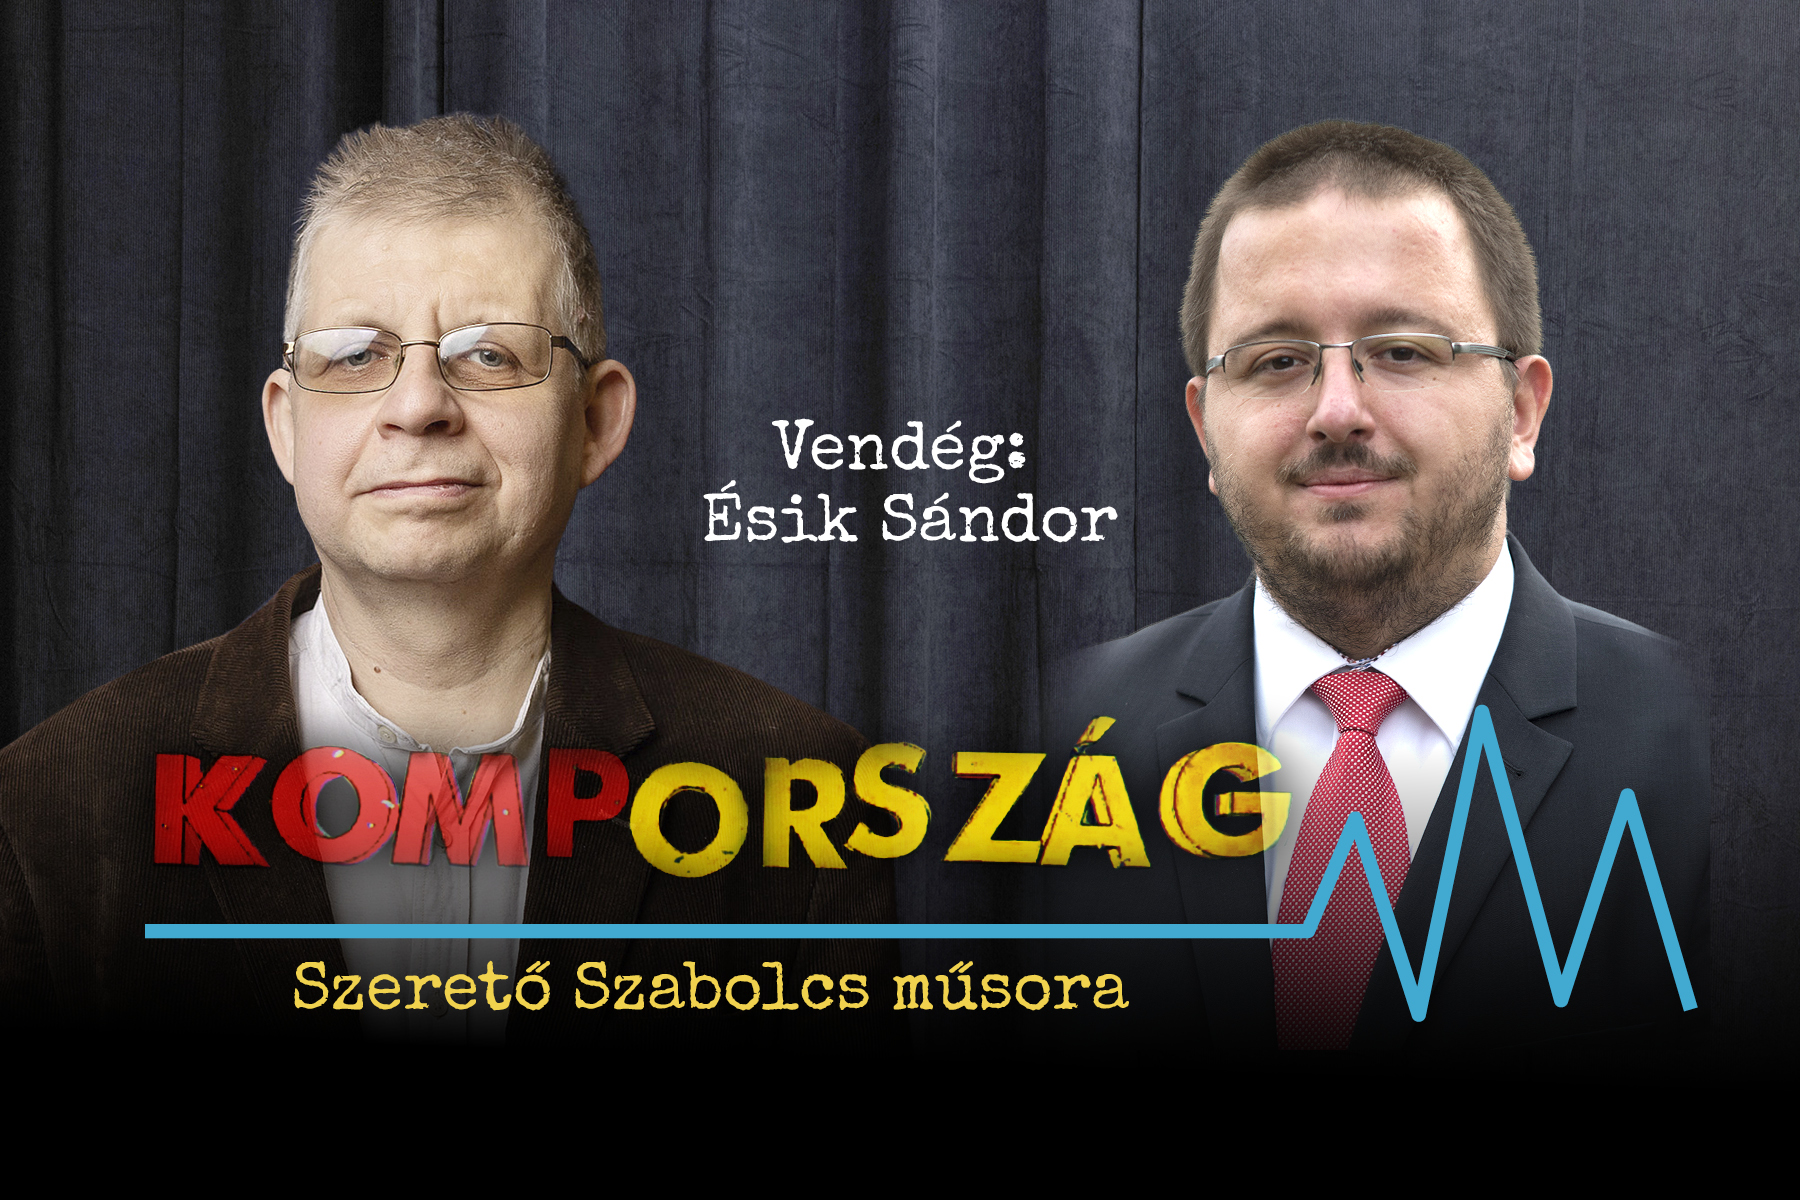 Ésik Sándor: A magyar kormány egy piti bűnöző agyával gondolkodik – Kompország